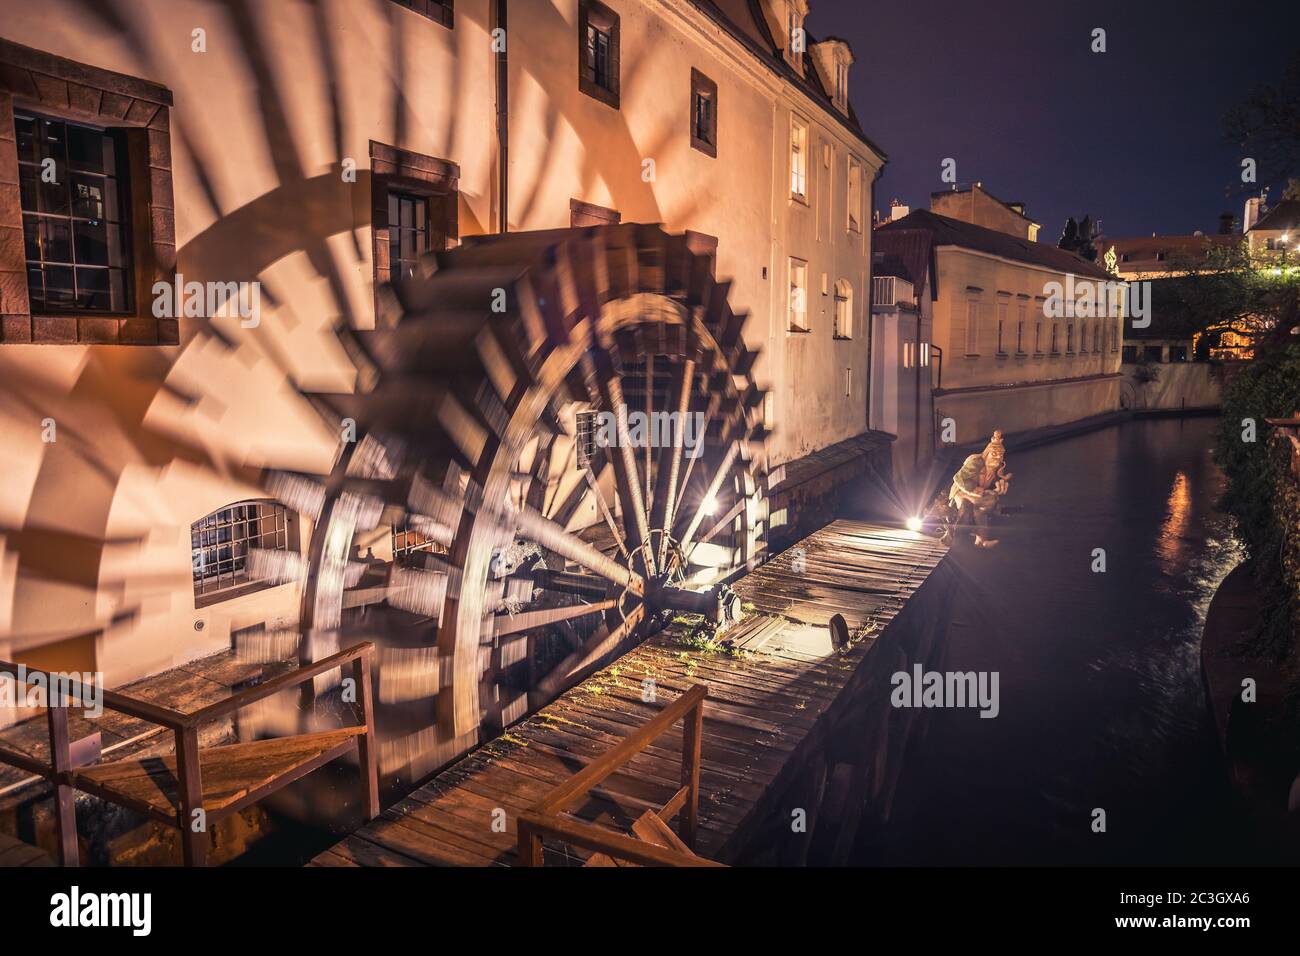 Moulin à eau historique sur l'île de Kampa à Prague, République tchèque. Branche de la rivière Vltava, du Certovka ou du ruisseau Devil's. Célèbre endroit à Prague Banque D'Images